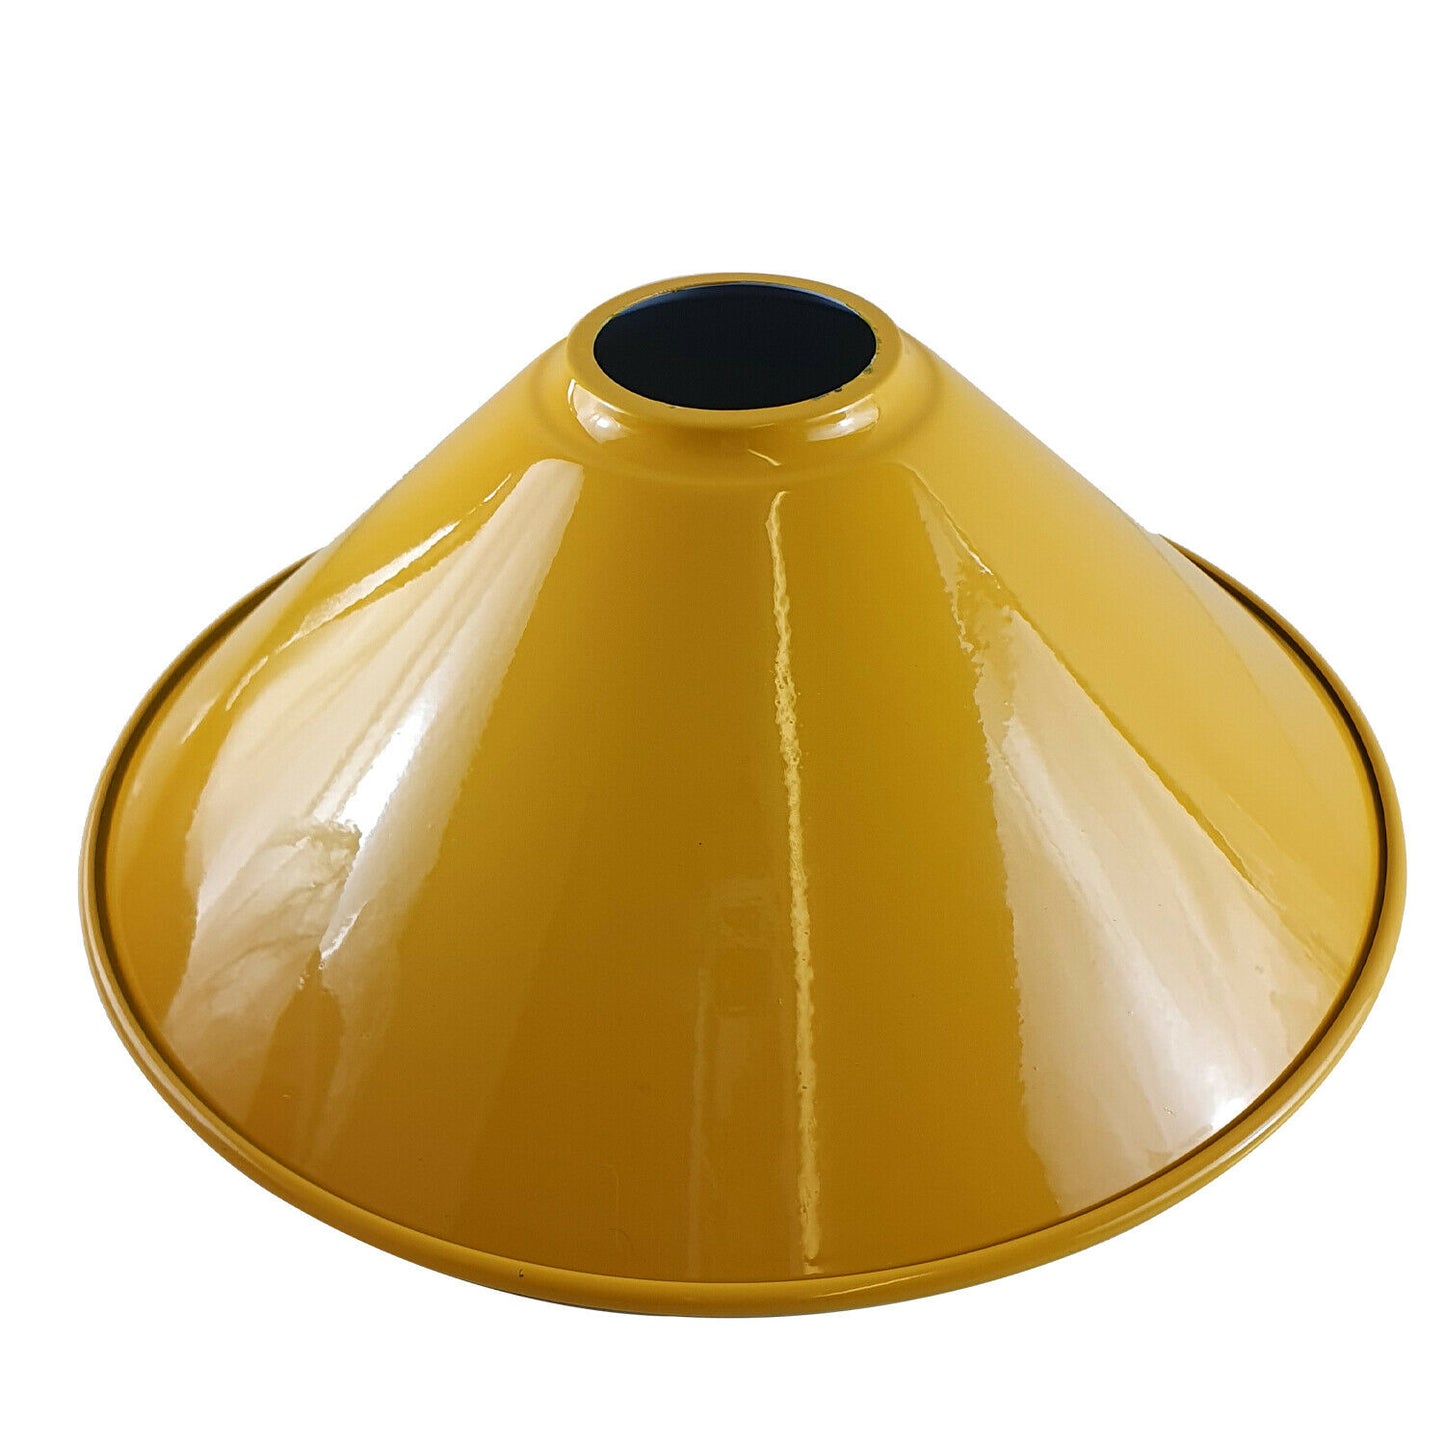 Vintage metal lamp shade yellow